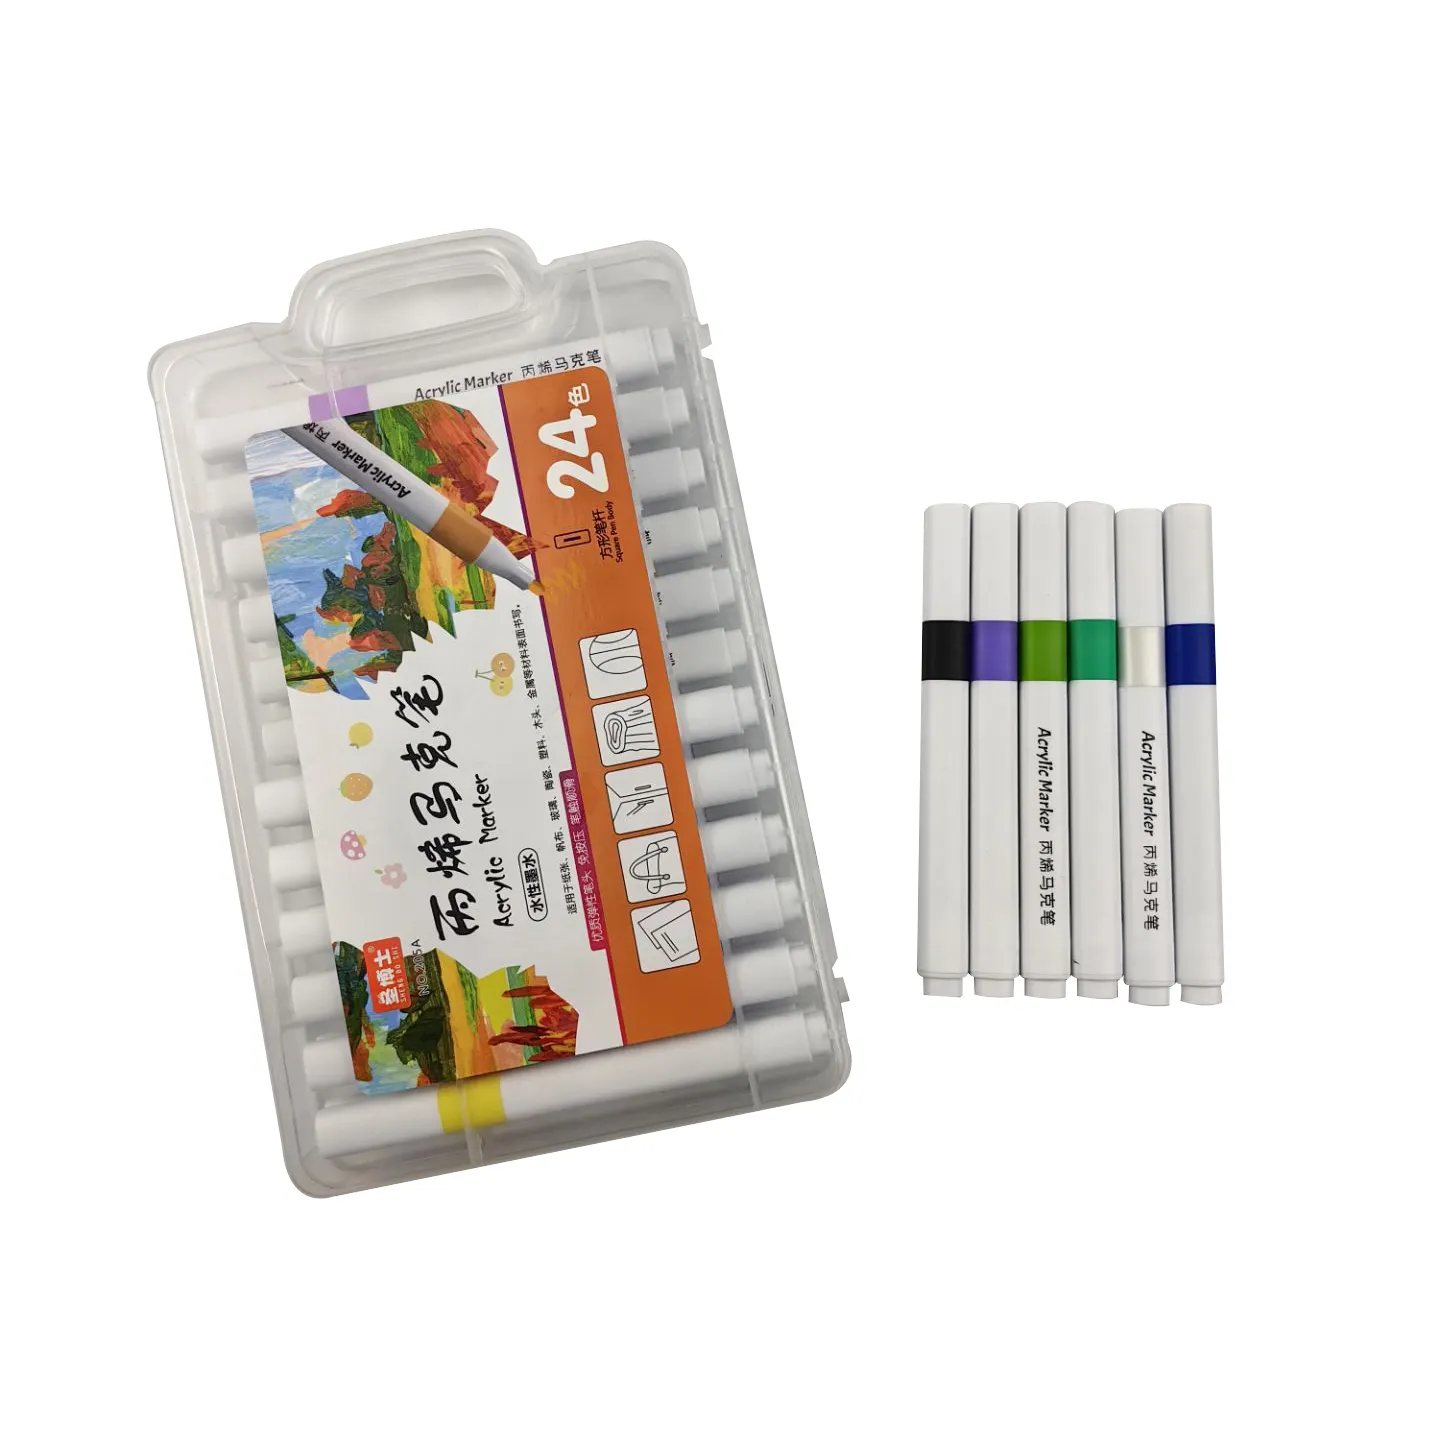 Bonvan individueller acryl-marker-stift für kinder malerei kinder diy acryl-filz farbe stifte farben